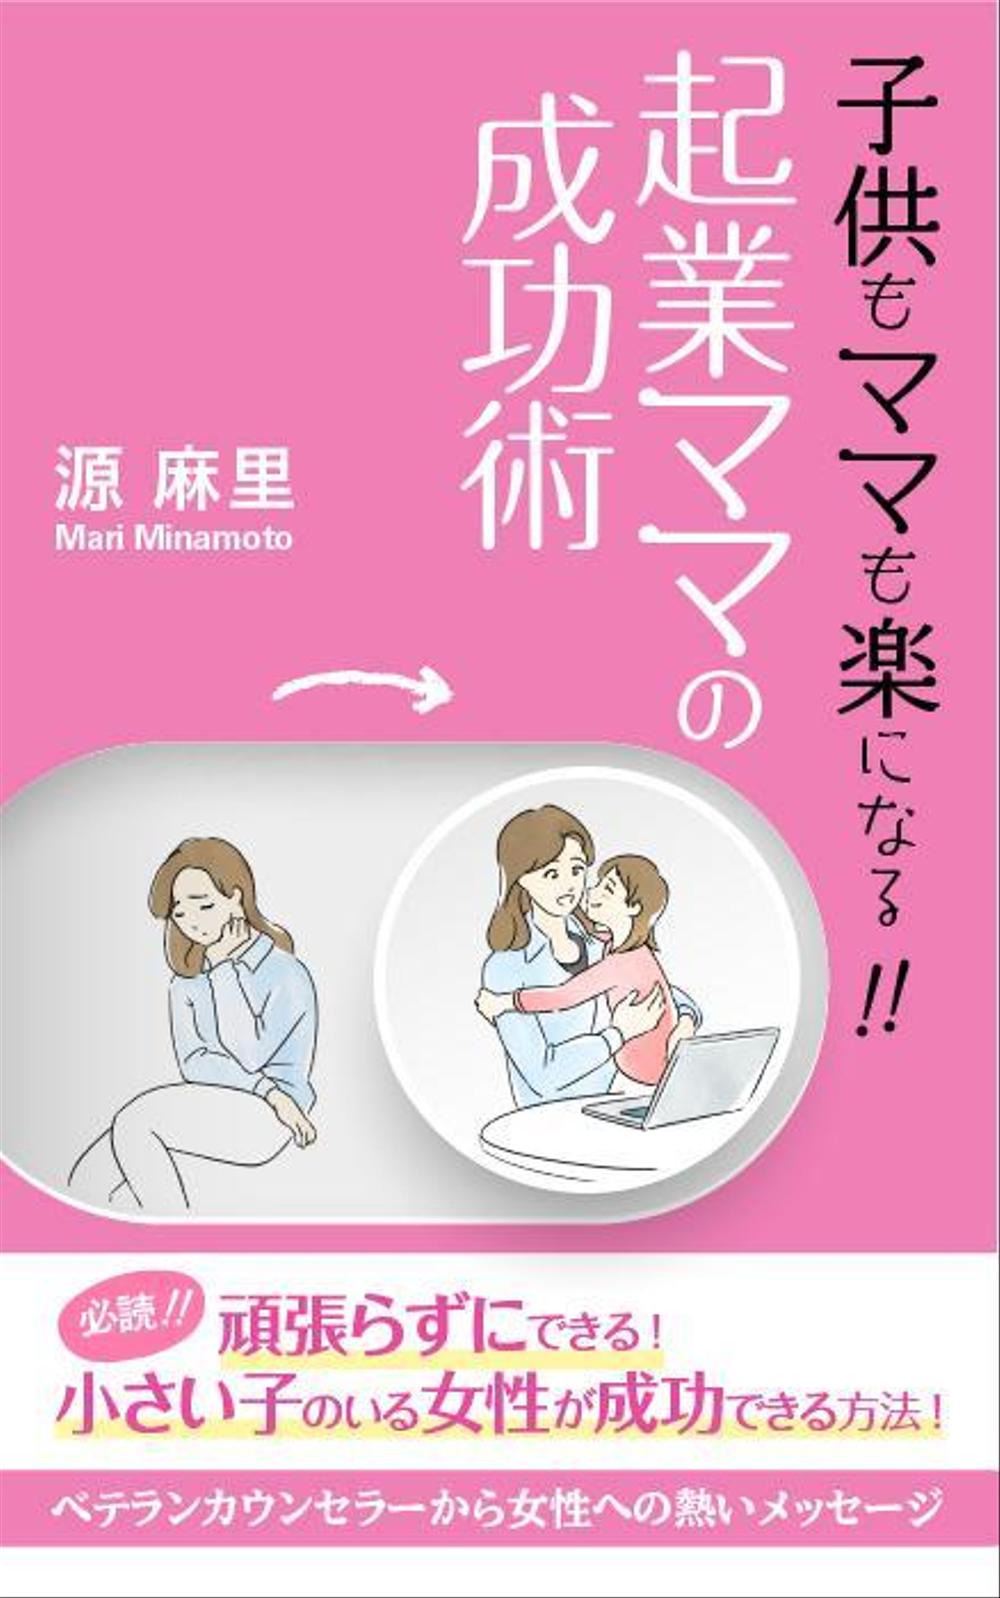 20191223_南里優未子様_女性の自立本 電子書籍（Kindle）の表紙デザイン_B案.jpg